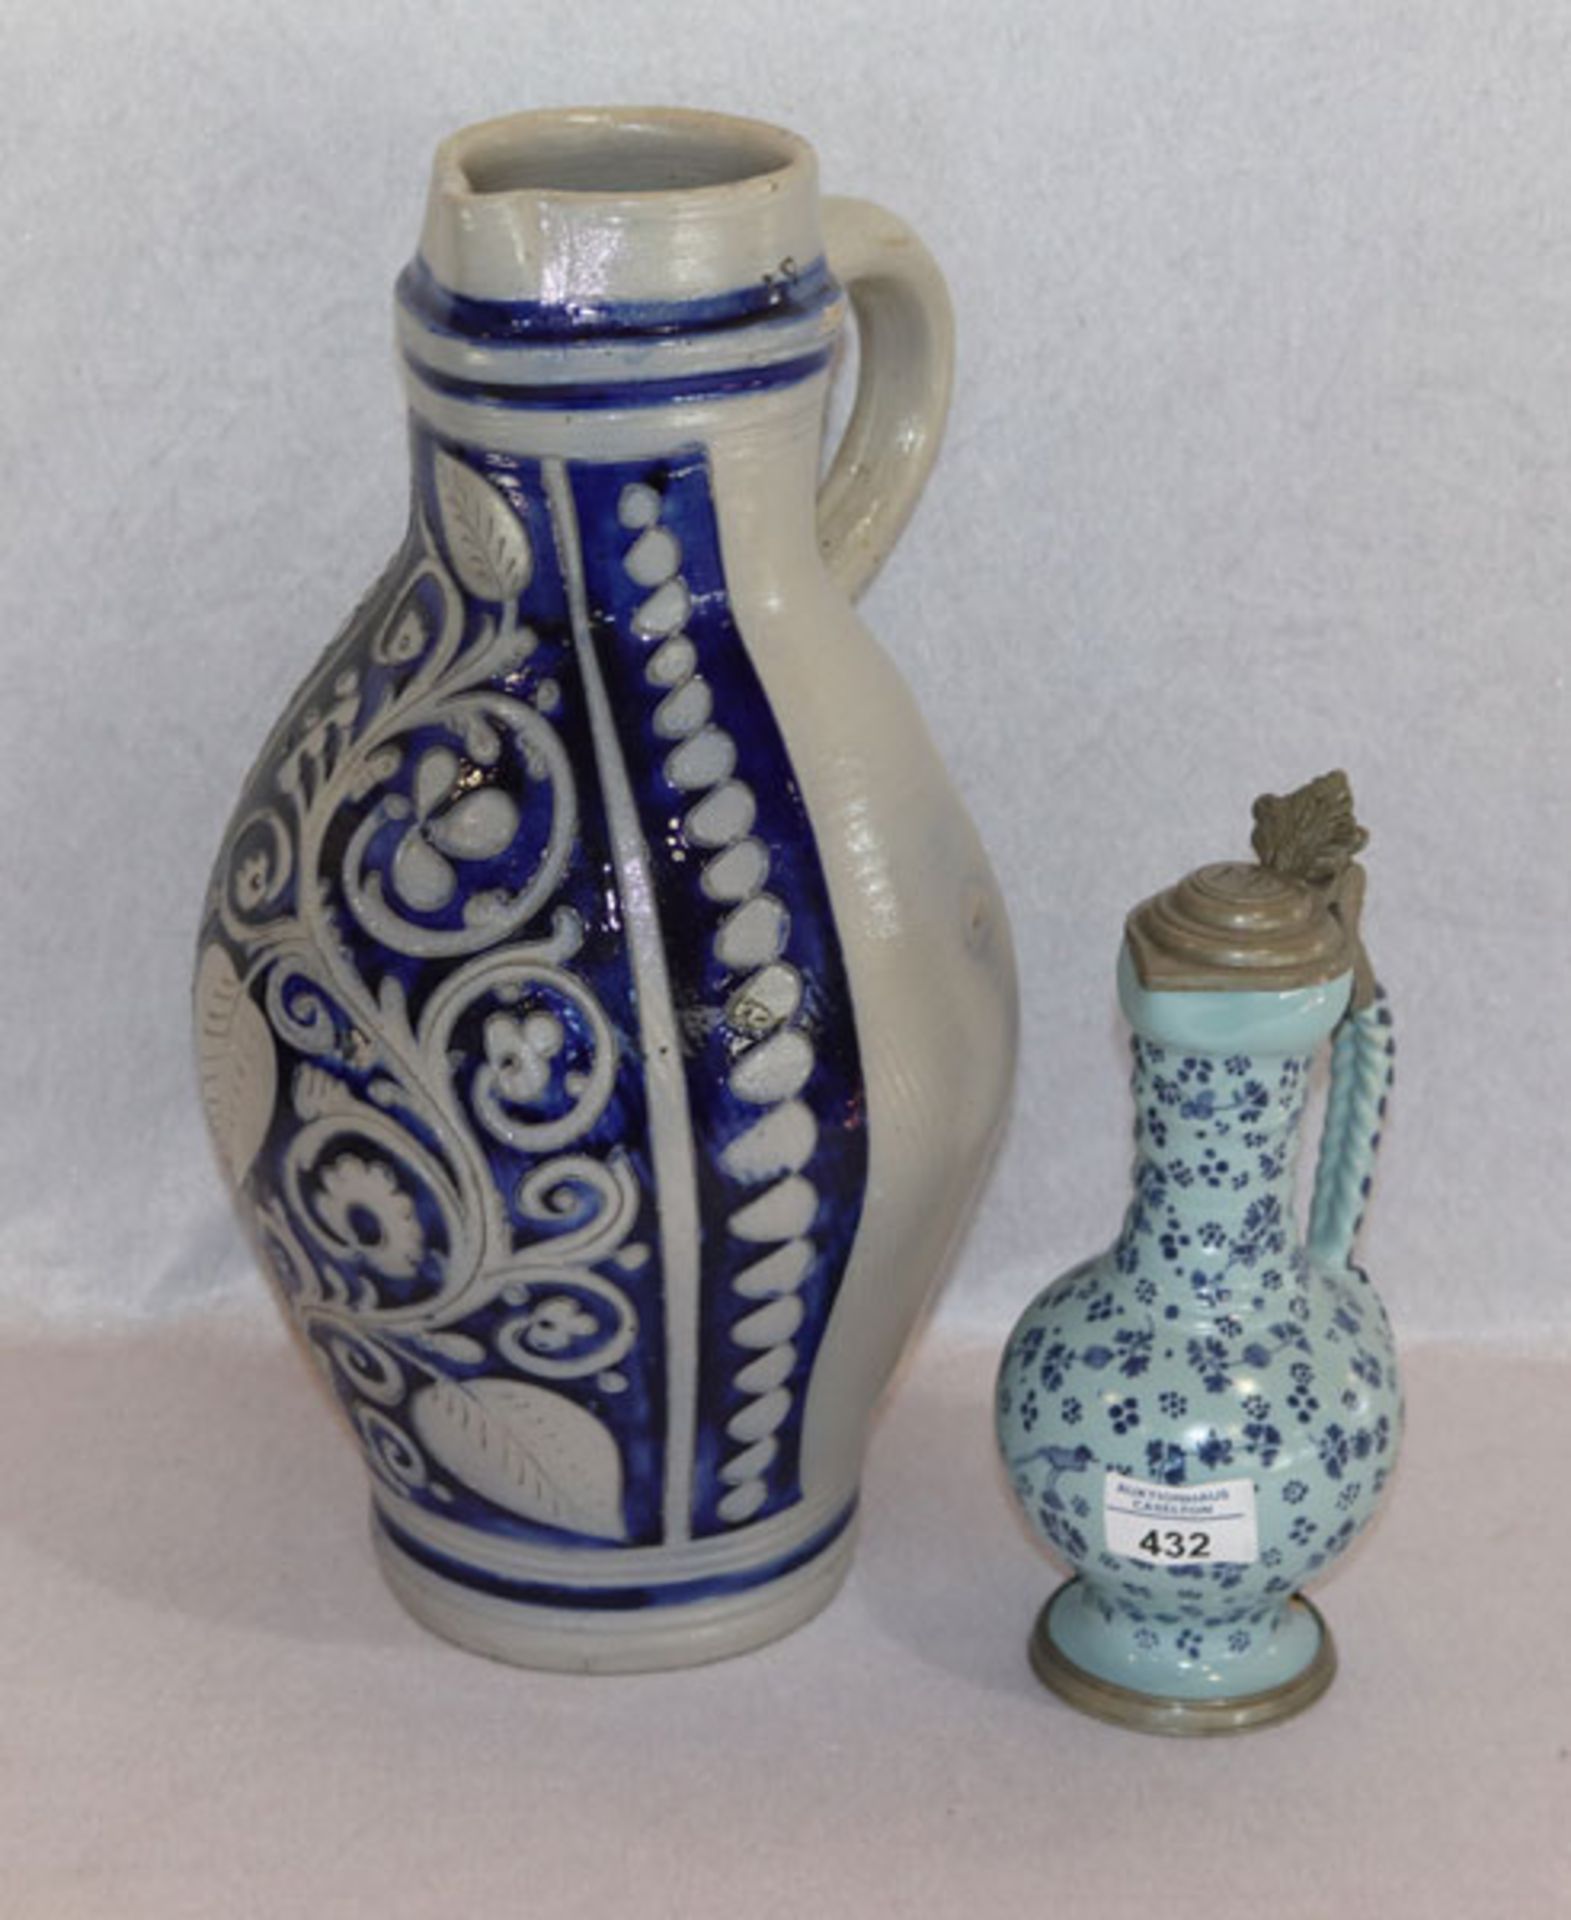 Steingut Henkelkrug, 5 Liter, mit Salzglasur, H 40 cm, D 27 cm, und Keamik Henkelkrug, hellblau